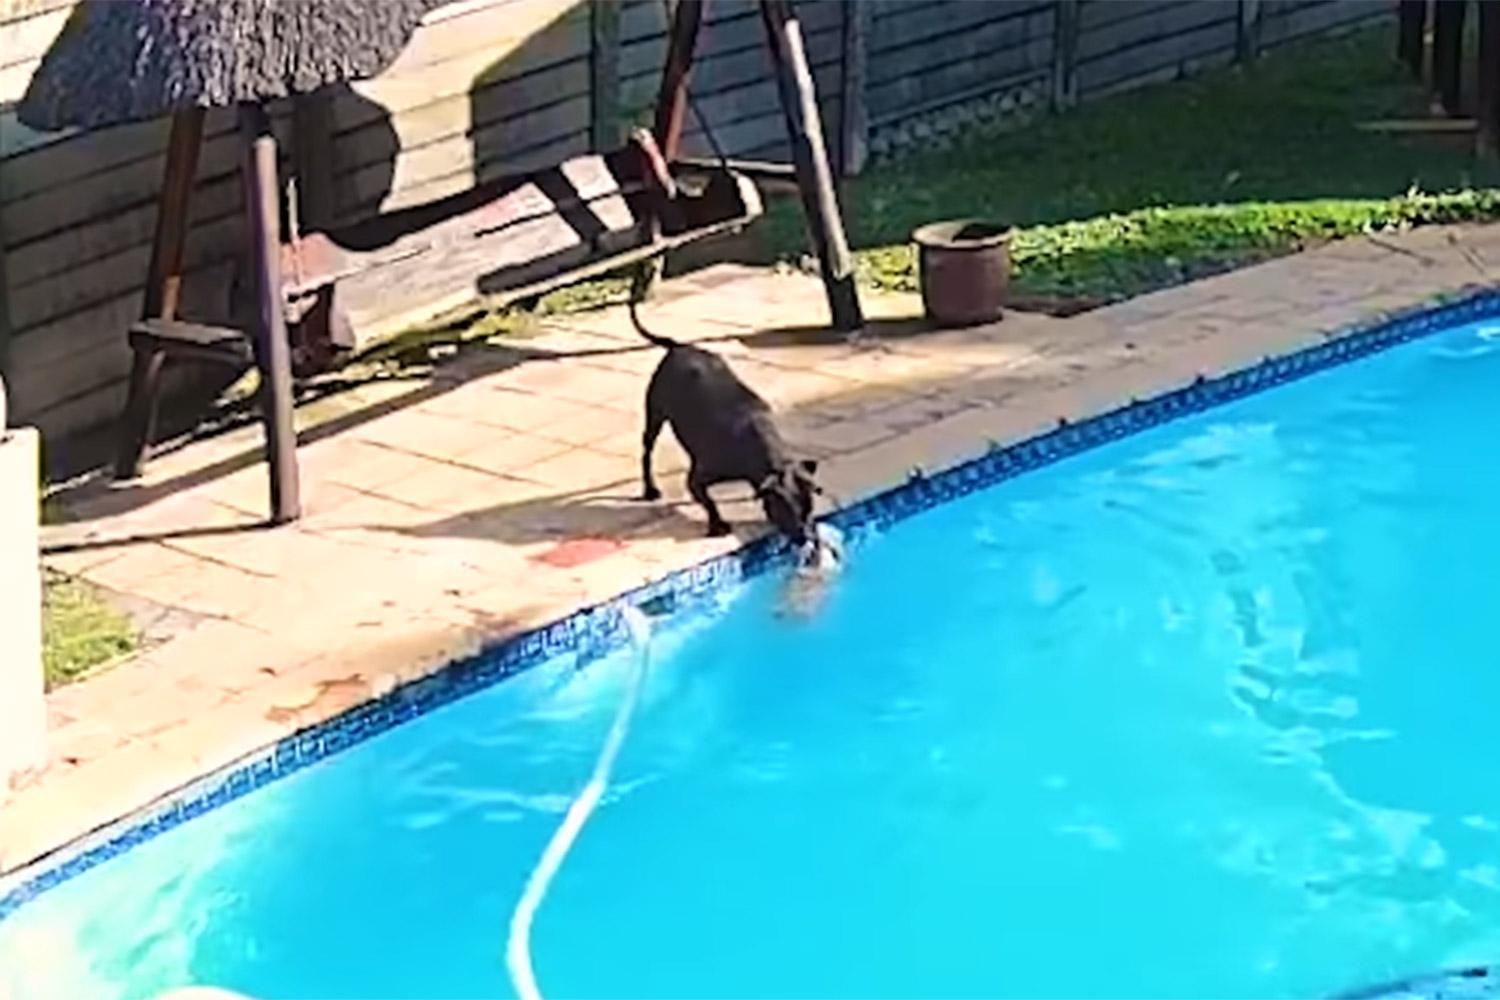 Бойцовский пес спас своего друга из бассейна: щемящее видео